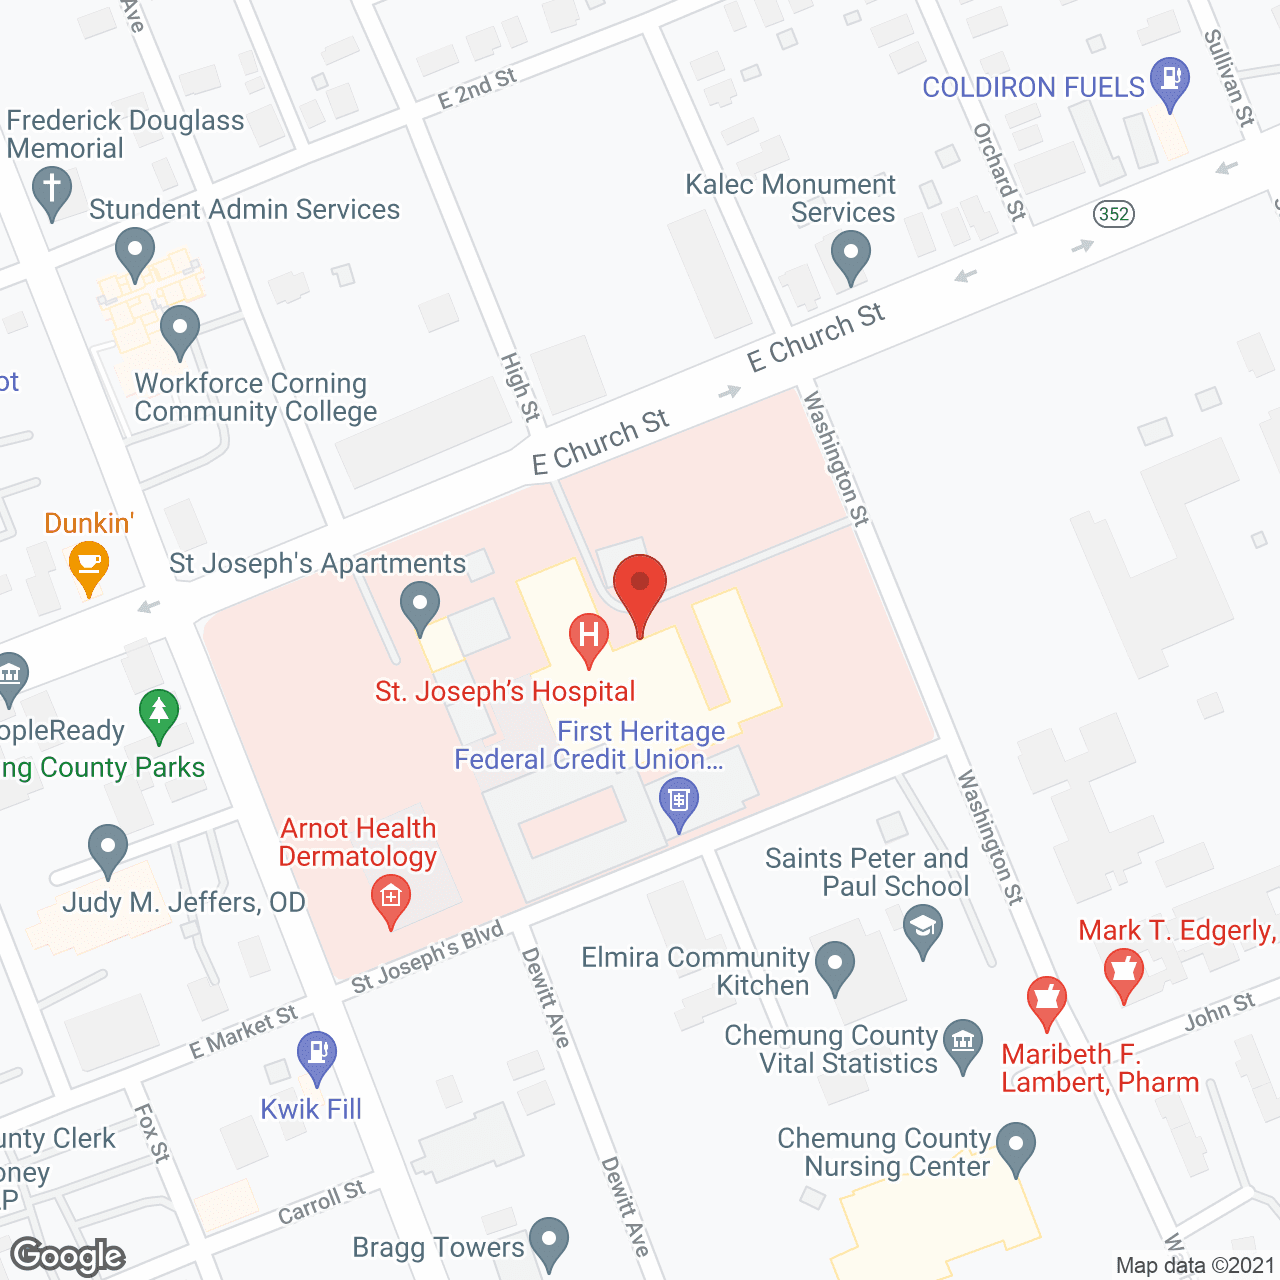 St Josephs Hospital/Snf in google map